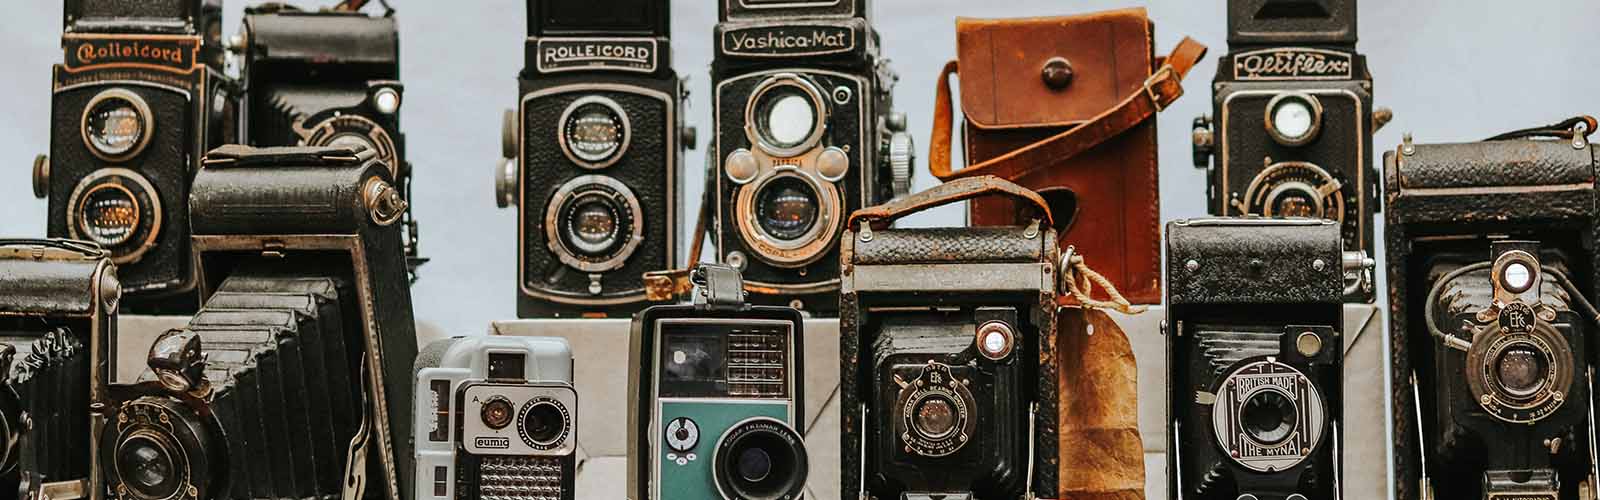 vintage photo cameras